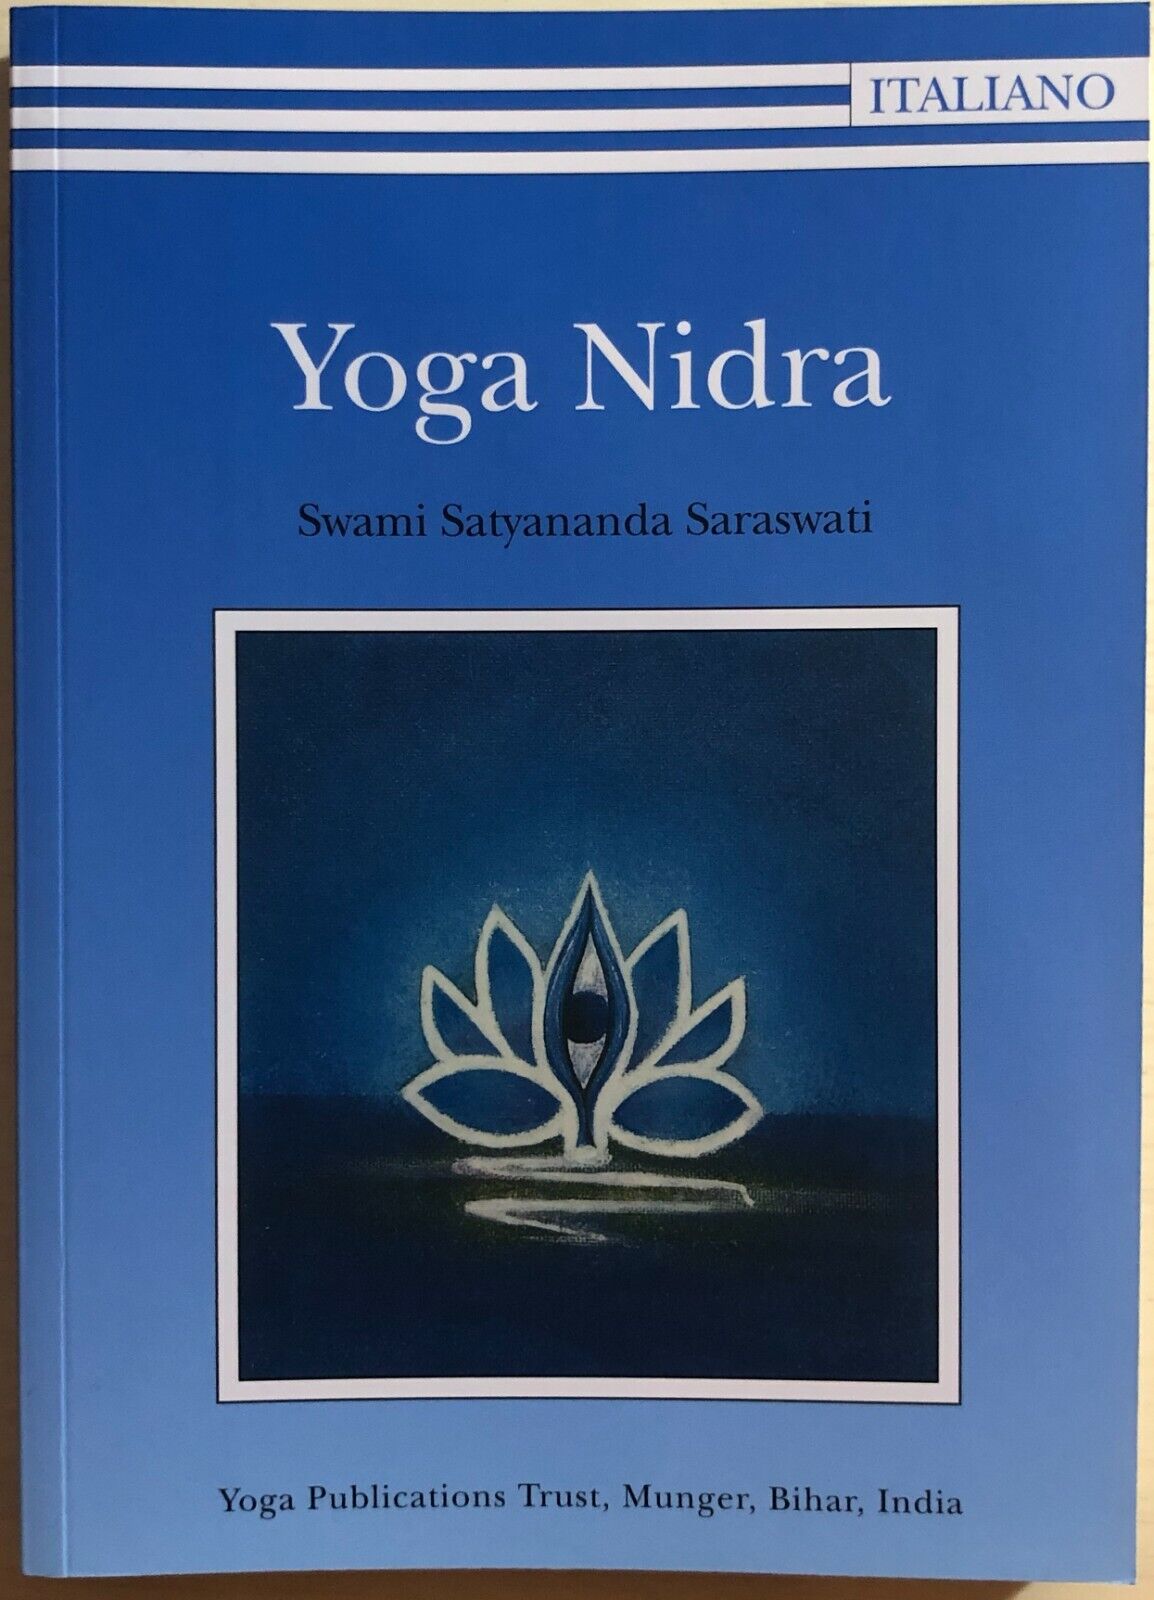 Yoga nidra di Swami Saraswati Satyananda, 2001, Yoga Publications Trust